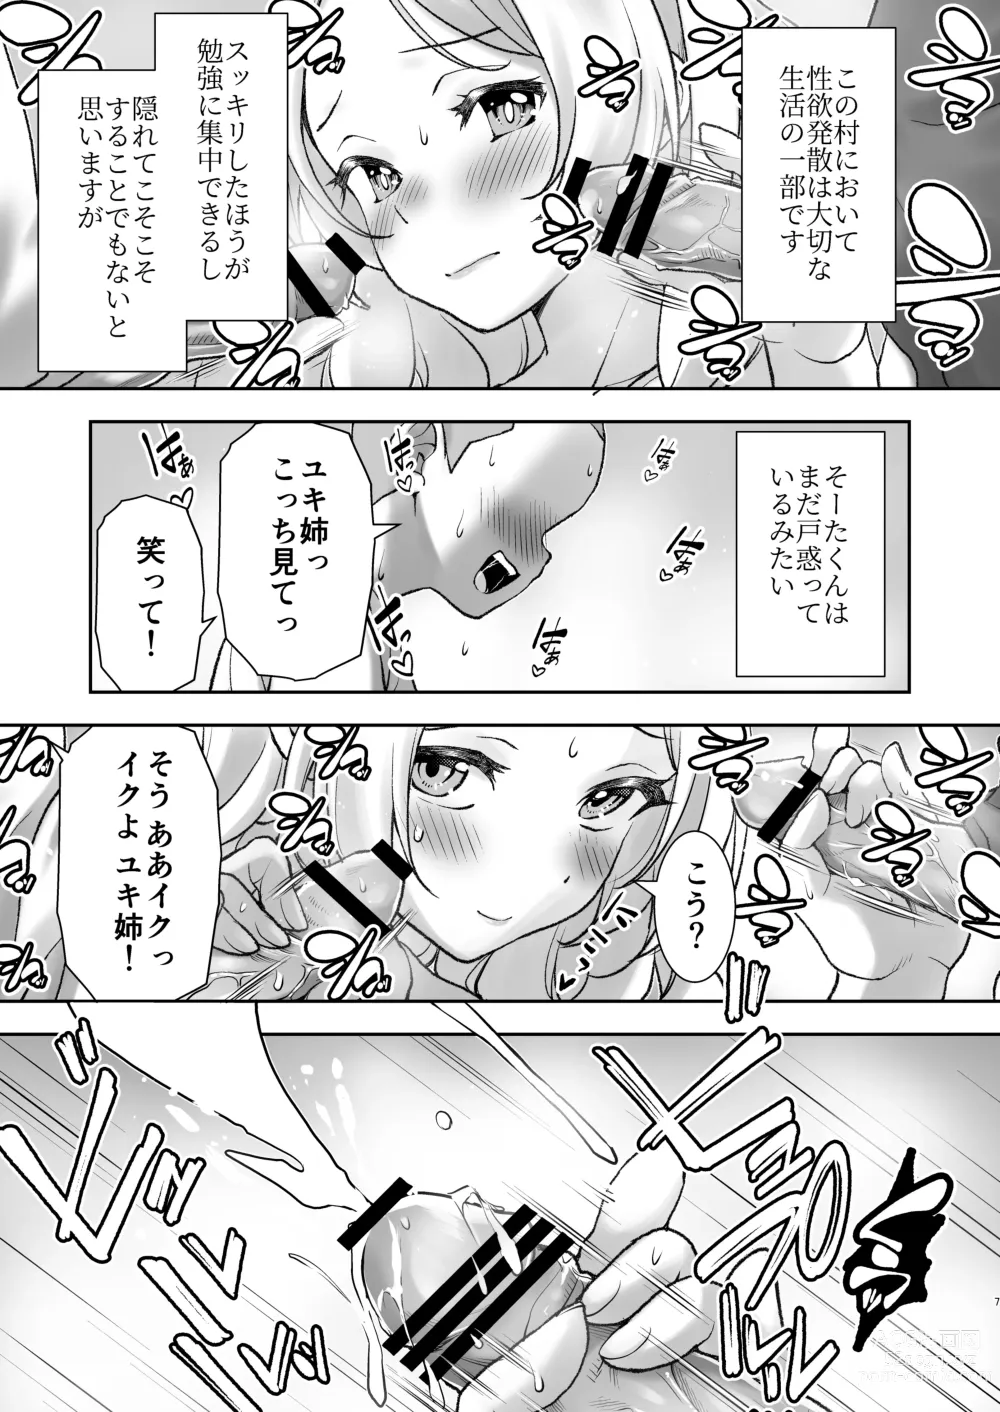 Page 7 of doujinshi Mura ni wa Juku ga Nai no de Watashi ga Benkyou wo Oshiete-imasu.